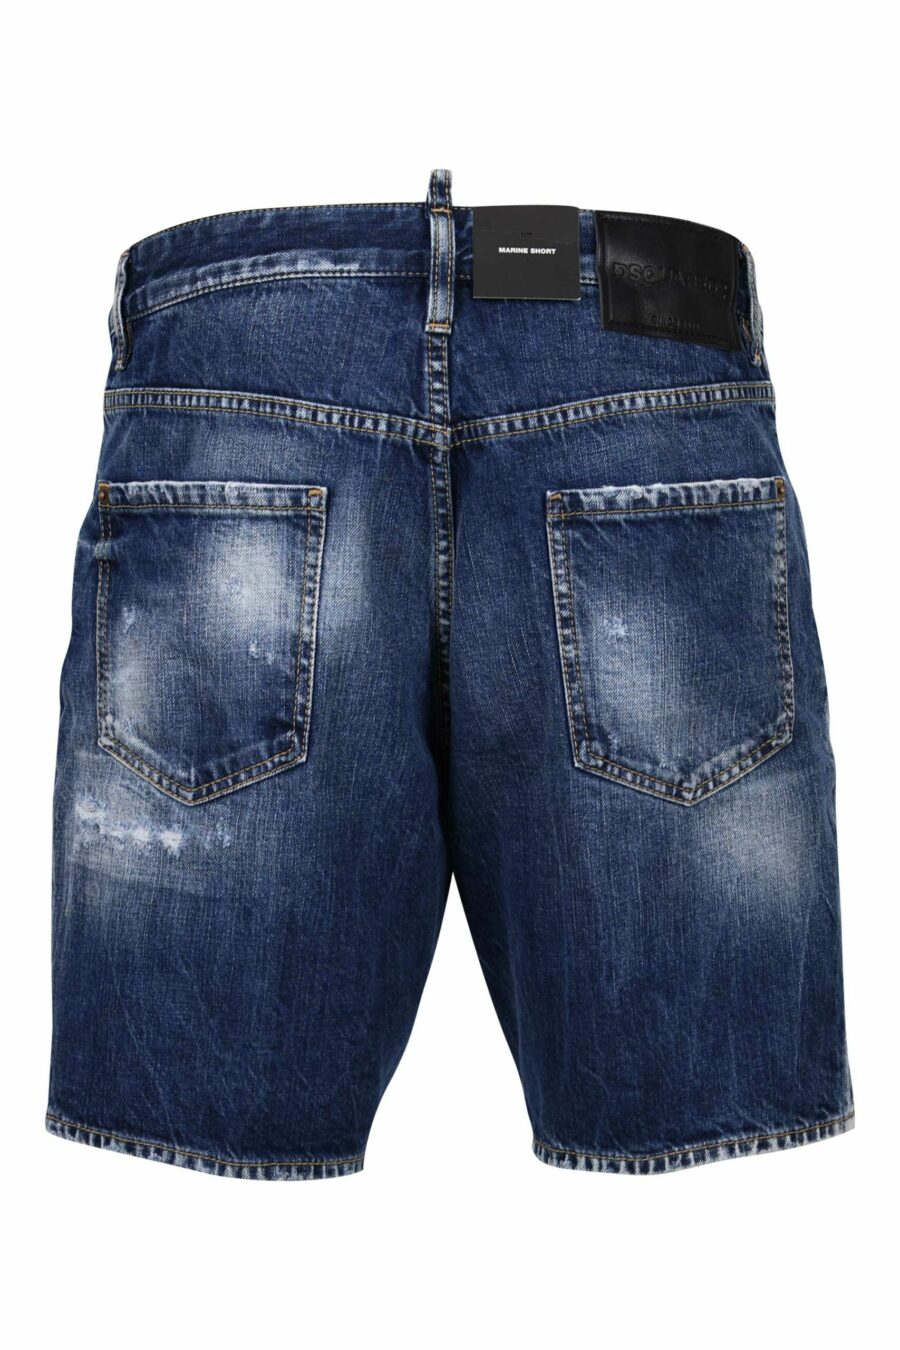 Blue denim shorts "marine short" with red logo - 8054148339920 2 scaled